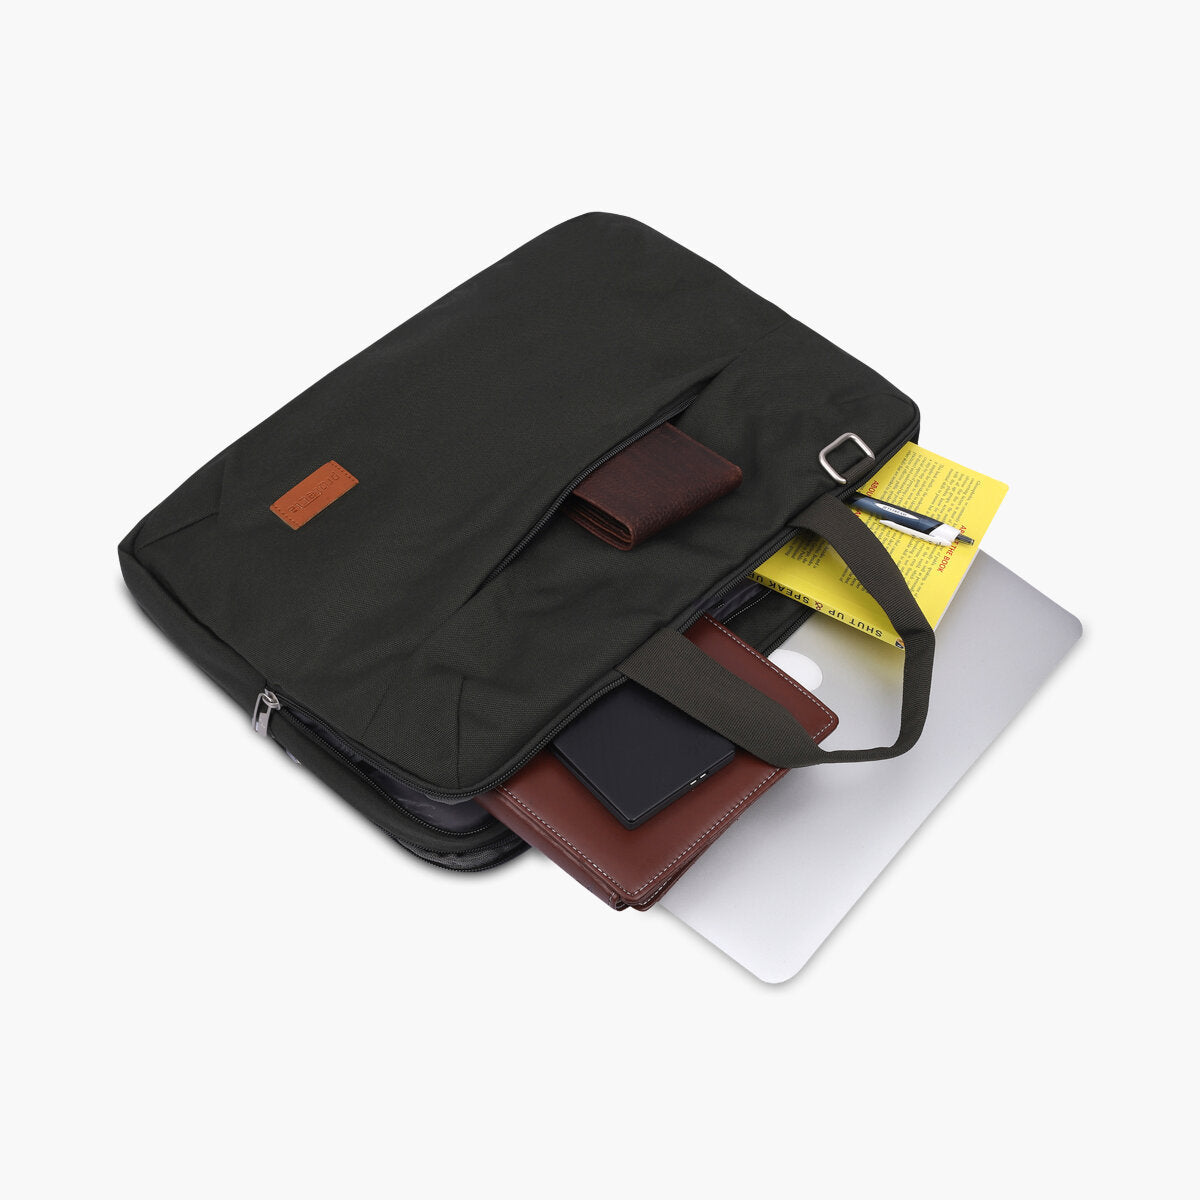 Olive | Protecta High Pedestal Office Laptop Bag - 1